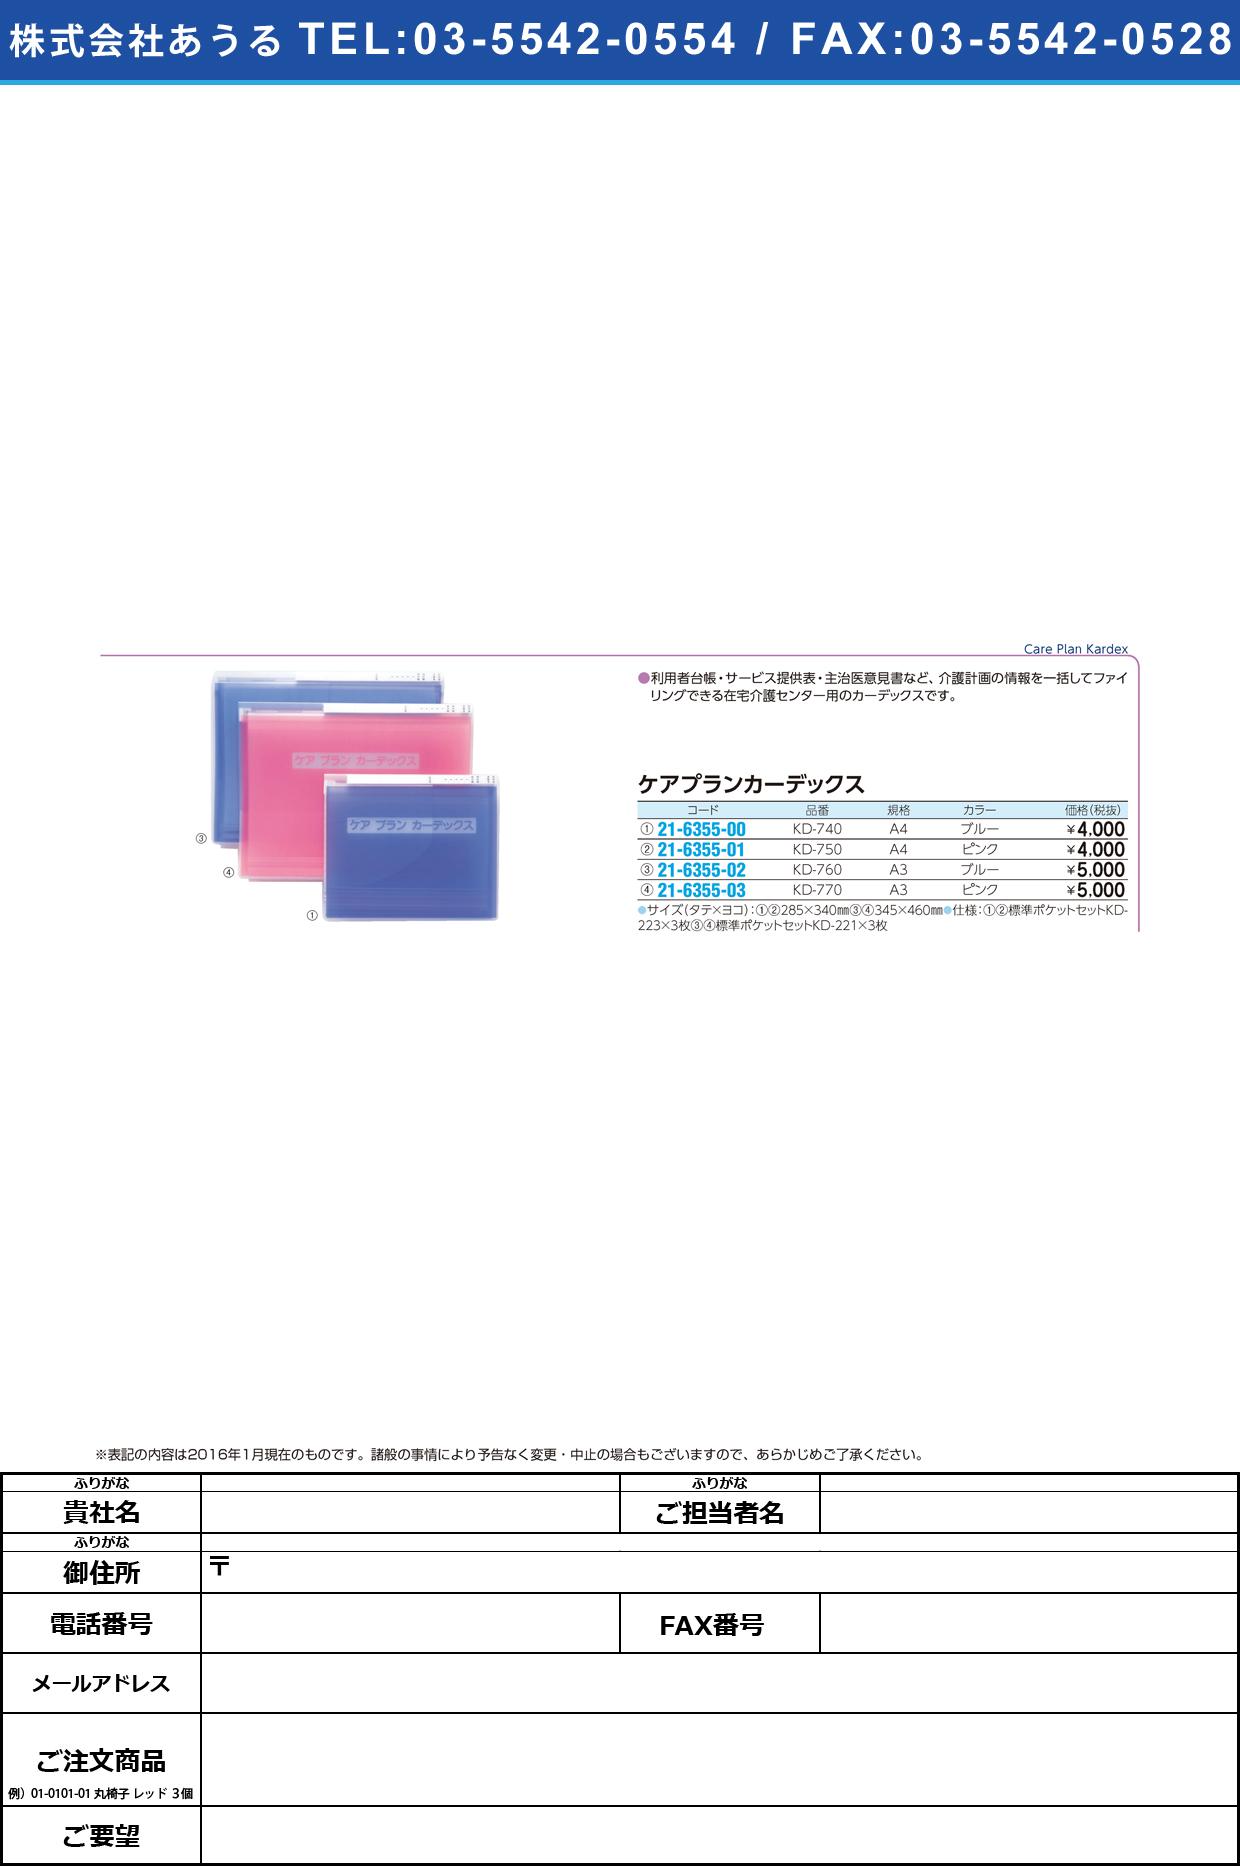 ケアプランカーデックス     ｹｱﾌﾟﾗﾝｶｰﾃﾞｯｸｽ KD-750(A4)ﾋﾟﾝｸ【1冊単位】(21-6355-01)